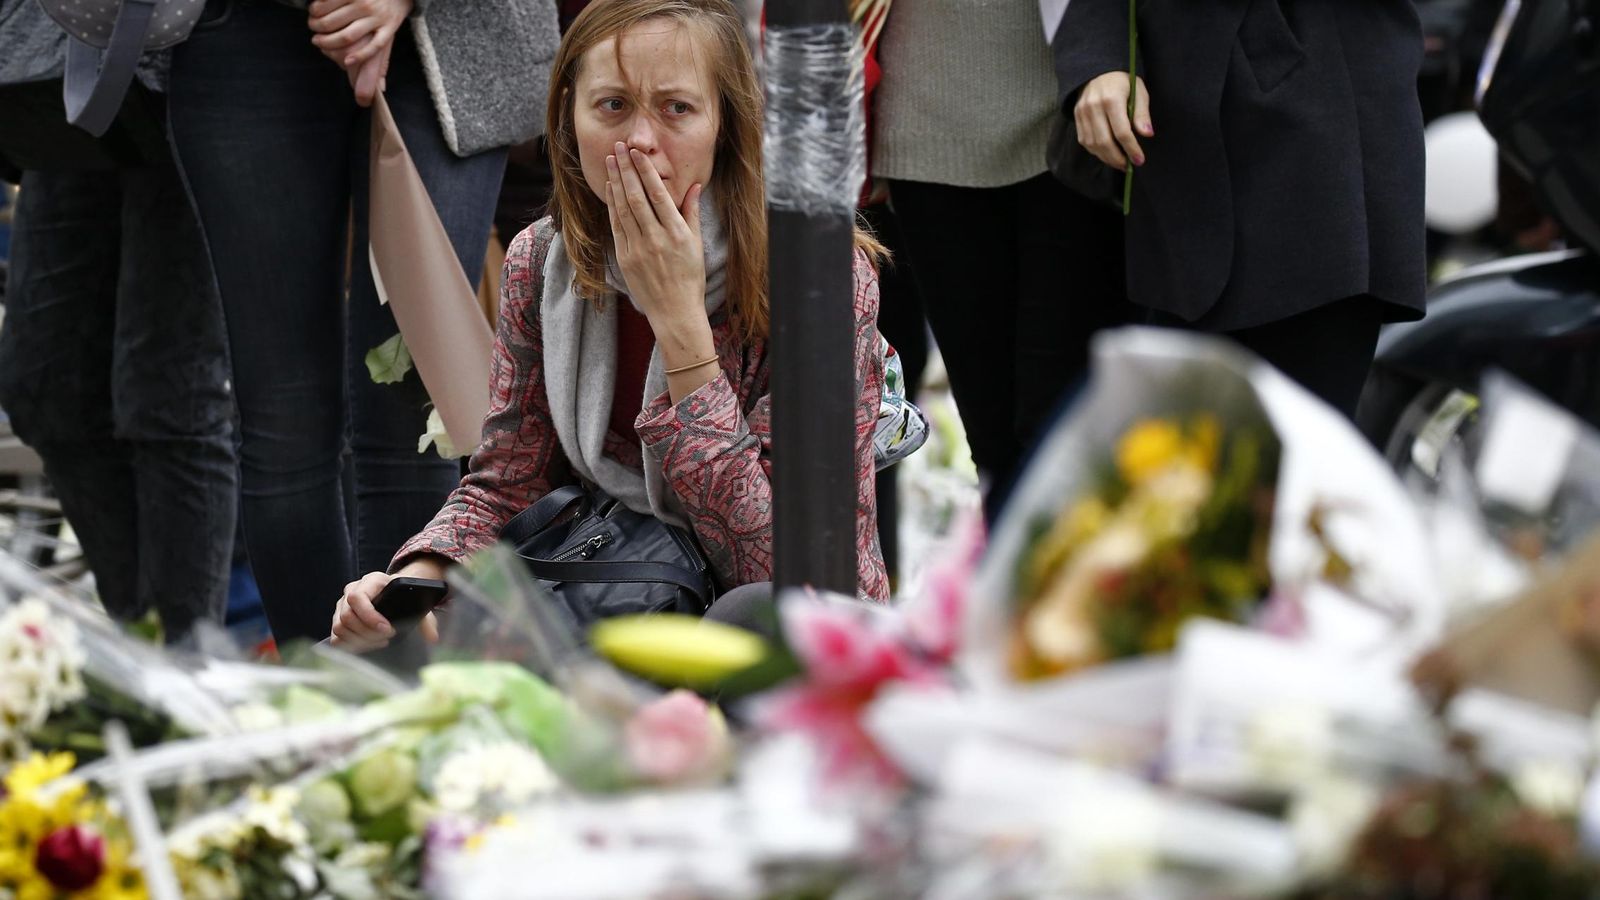 Foto: Una mujer reacciona frente a los monumentos de flores que se han creado alrededor de los lugares donde se produjo la tragedia. (Reuters)